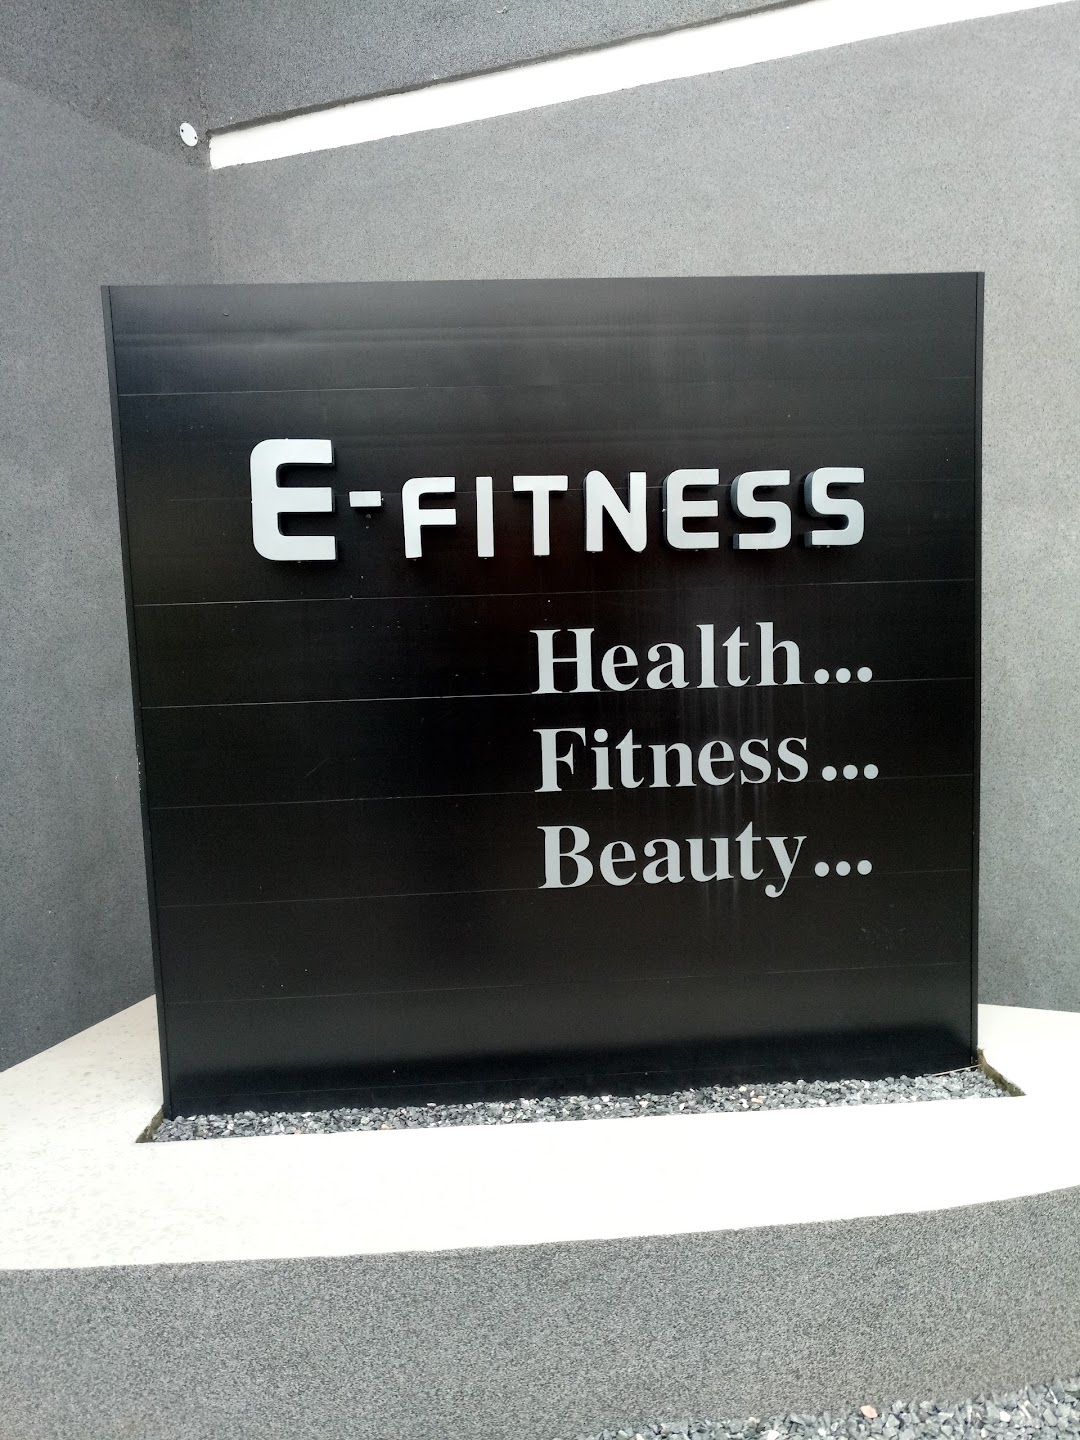 E-fitness